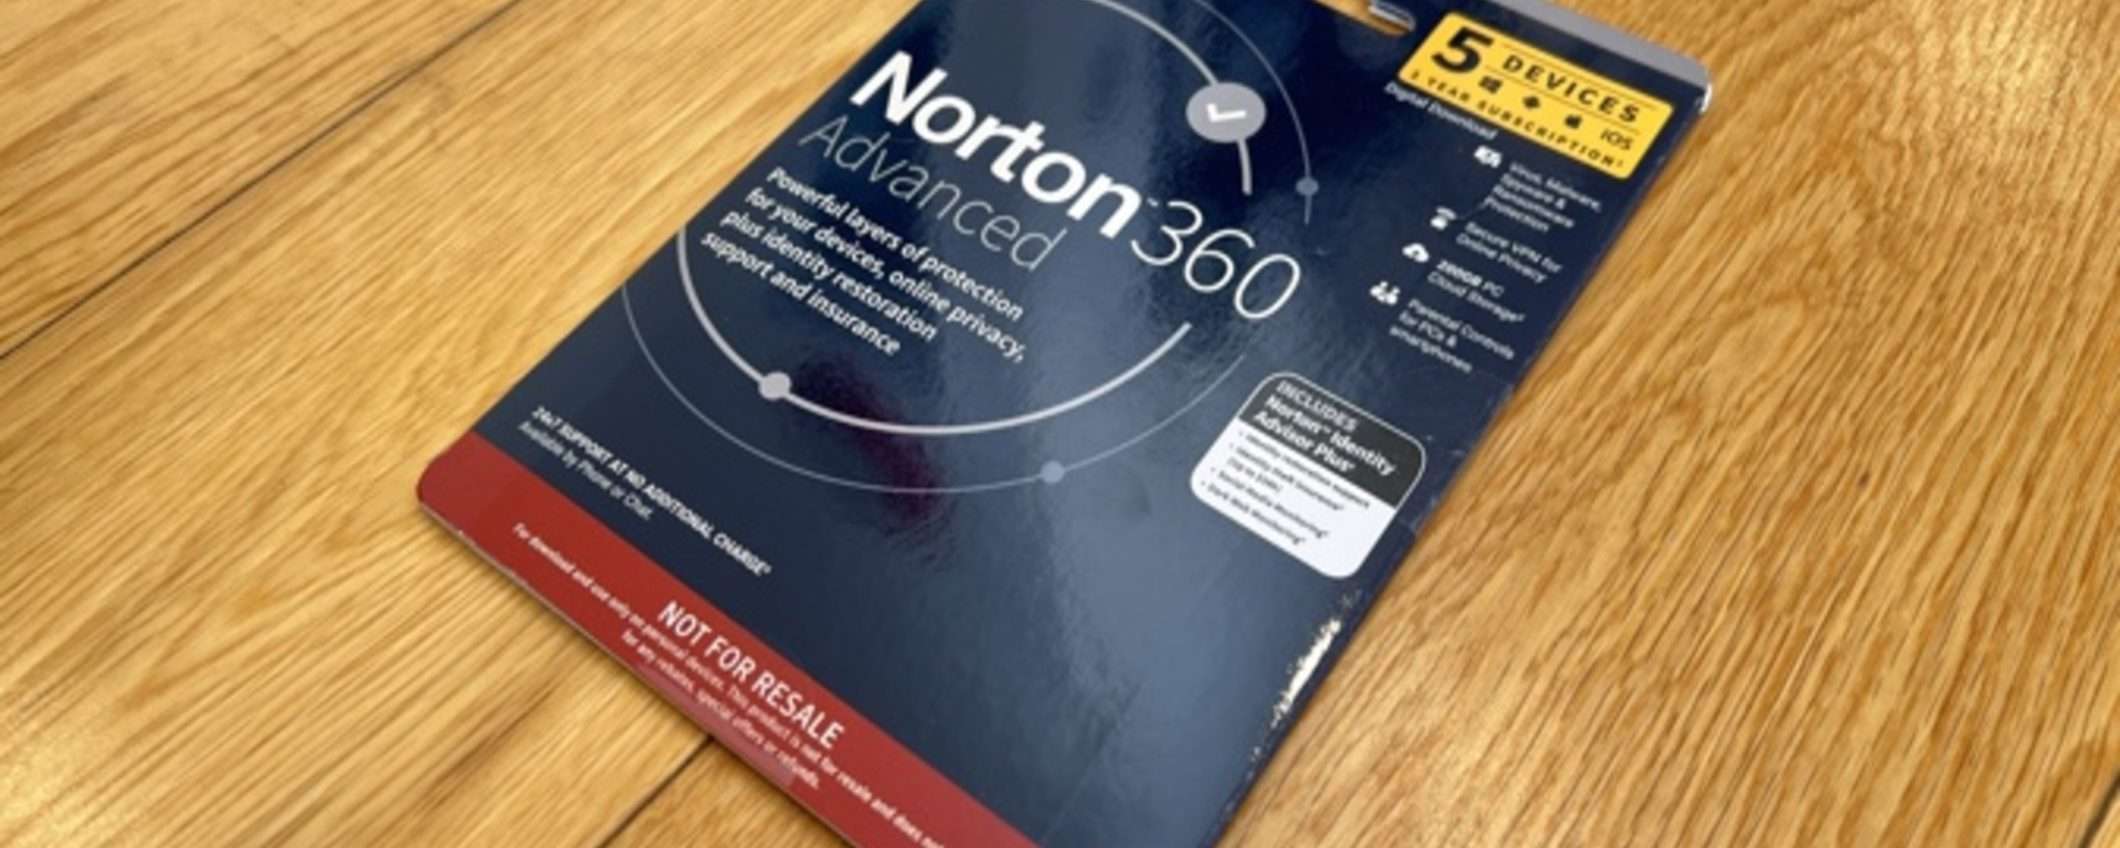 Norton lancia 360 Advanced: nuove funzionalità e sconto del 66%